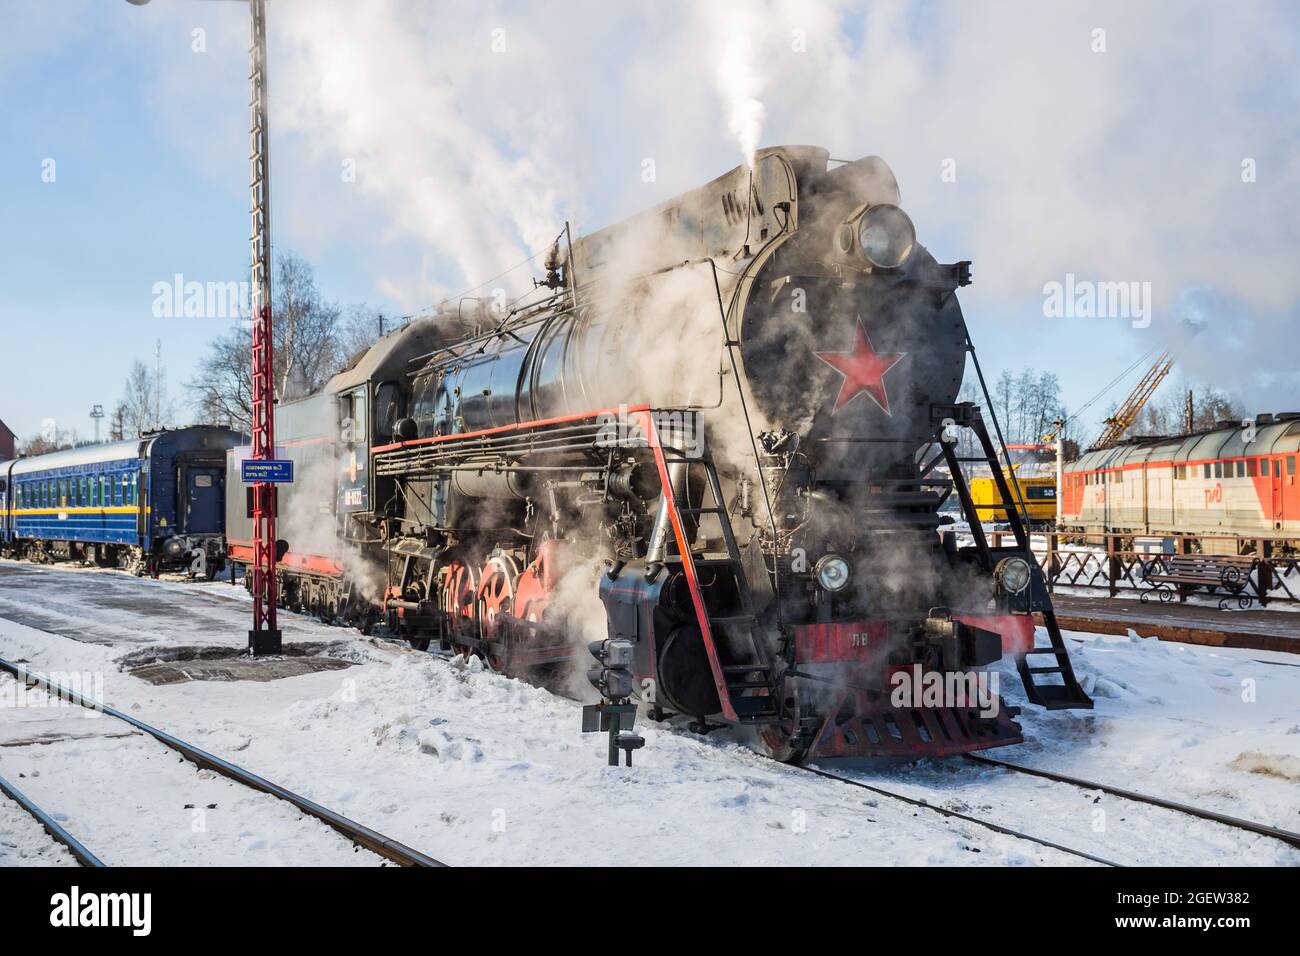 SORTAVALA, RUSSLAND - 10. MÄRZ 2021: Eine alte sowjetische Dampflokomotive klammert sich am Bahnhof von Sortavala an einen Personenzug Stockfoto